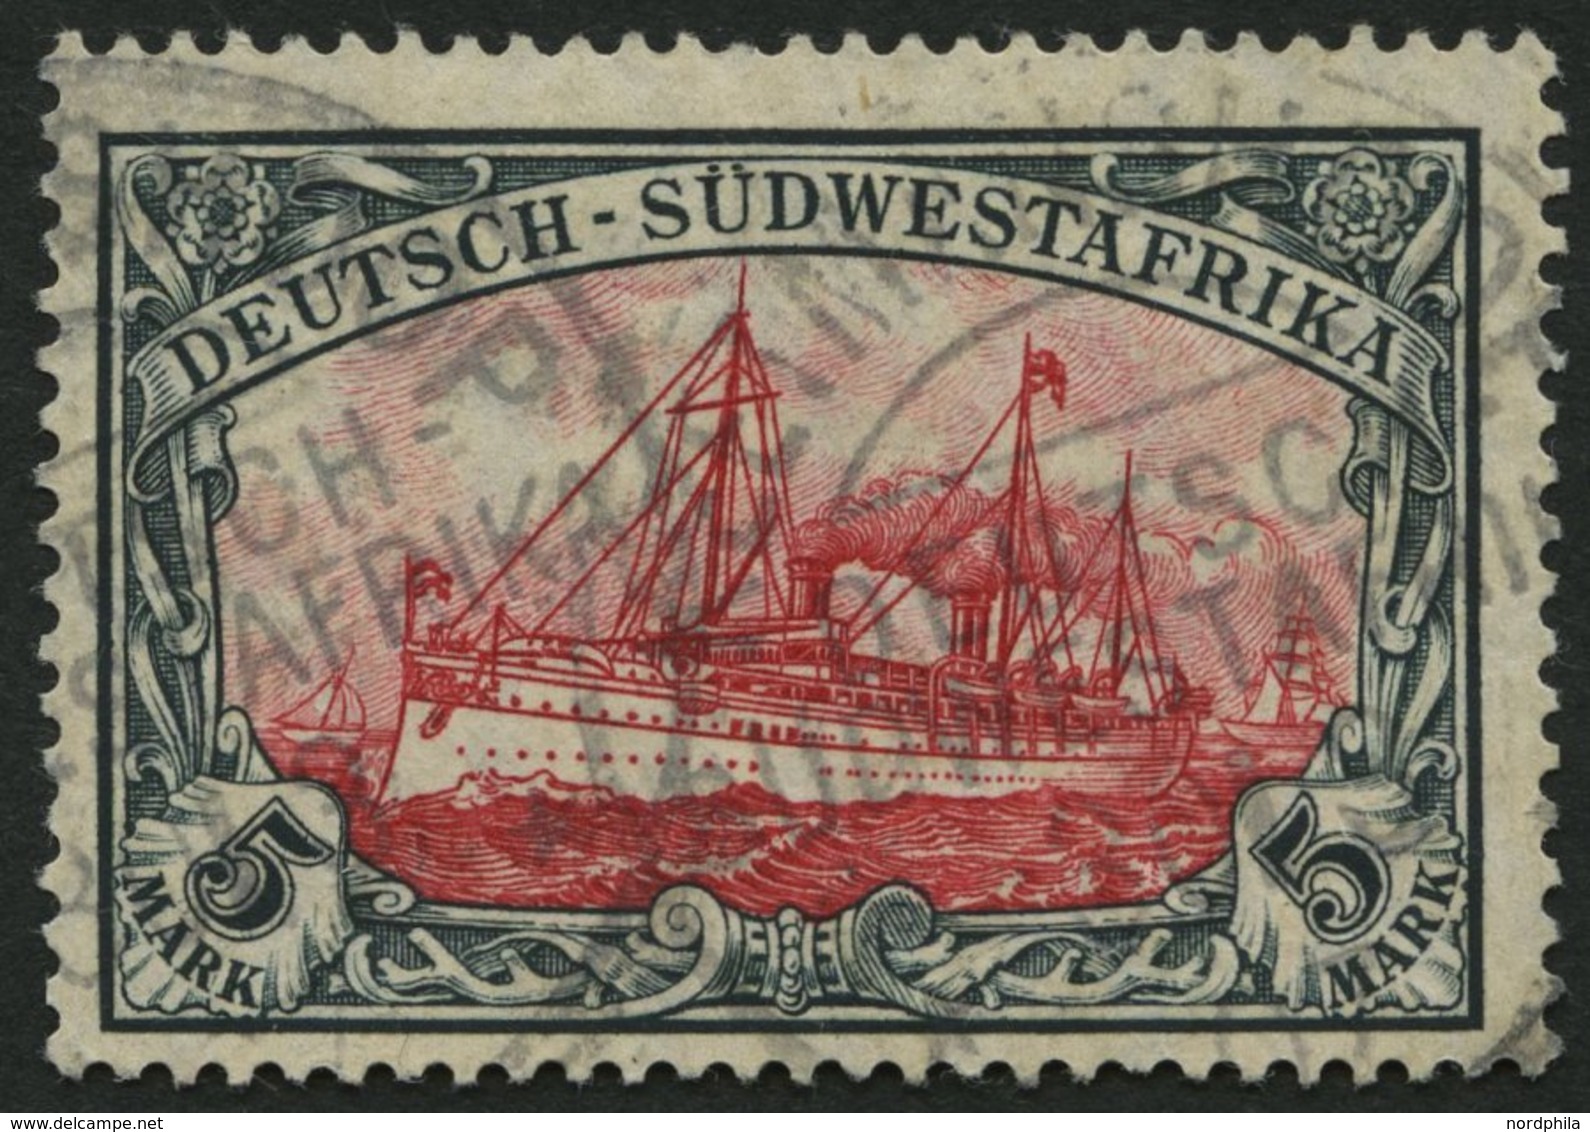 DSWA 32Aa O, 1906, 5 M. Grünschwarz/dunkelkarmin, Mit Wz., Gelblichrot Quarzend, Kleine Randkerbe Sonst Pracht, Gepr. Jä - África Del Sudoeste Alemana